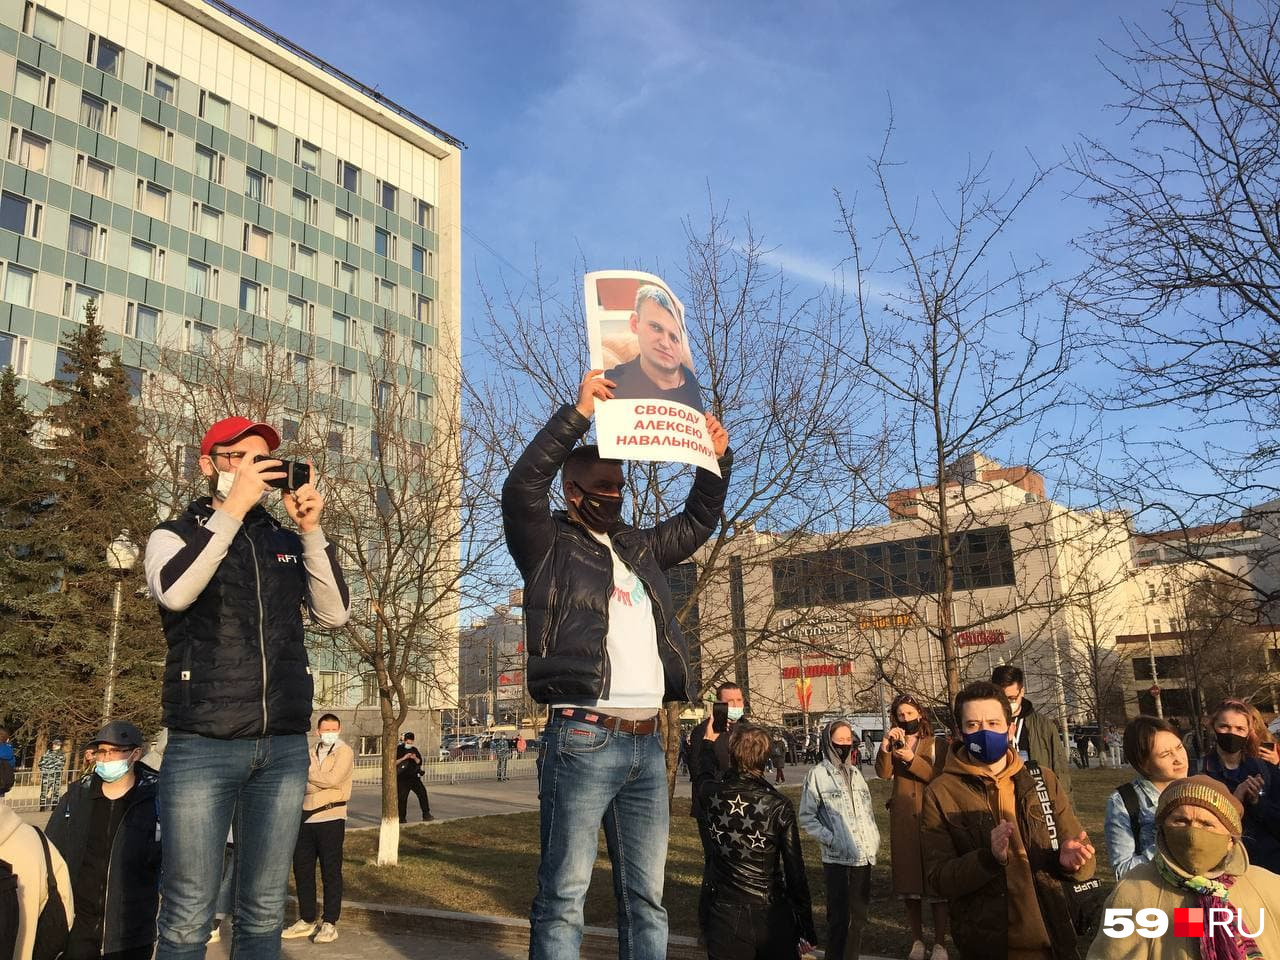 Участники призывали отпустить Алексея Навального на свободу